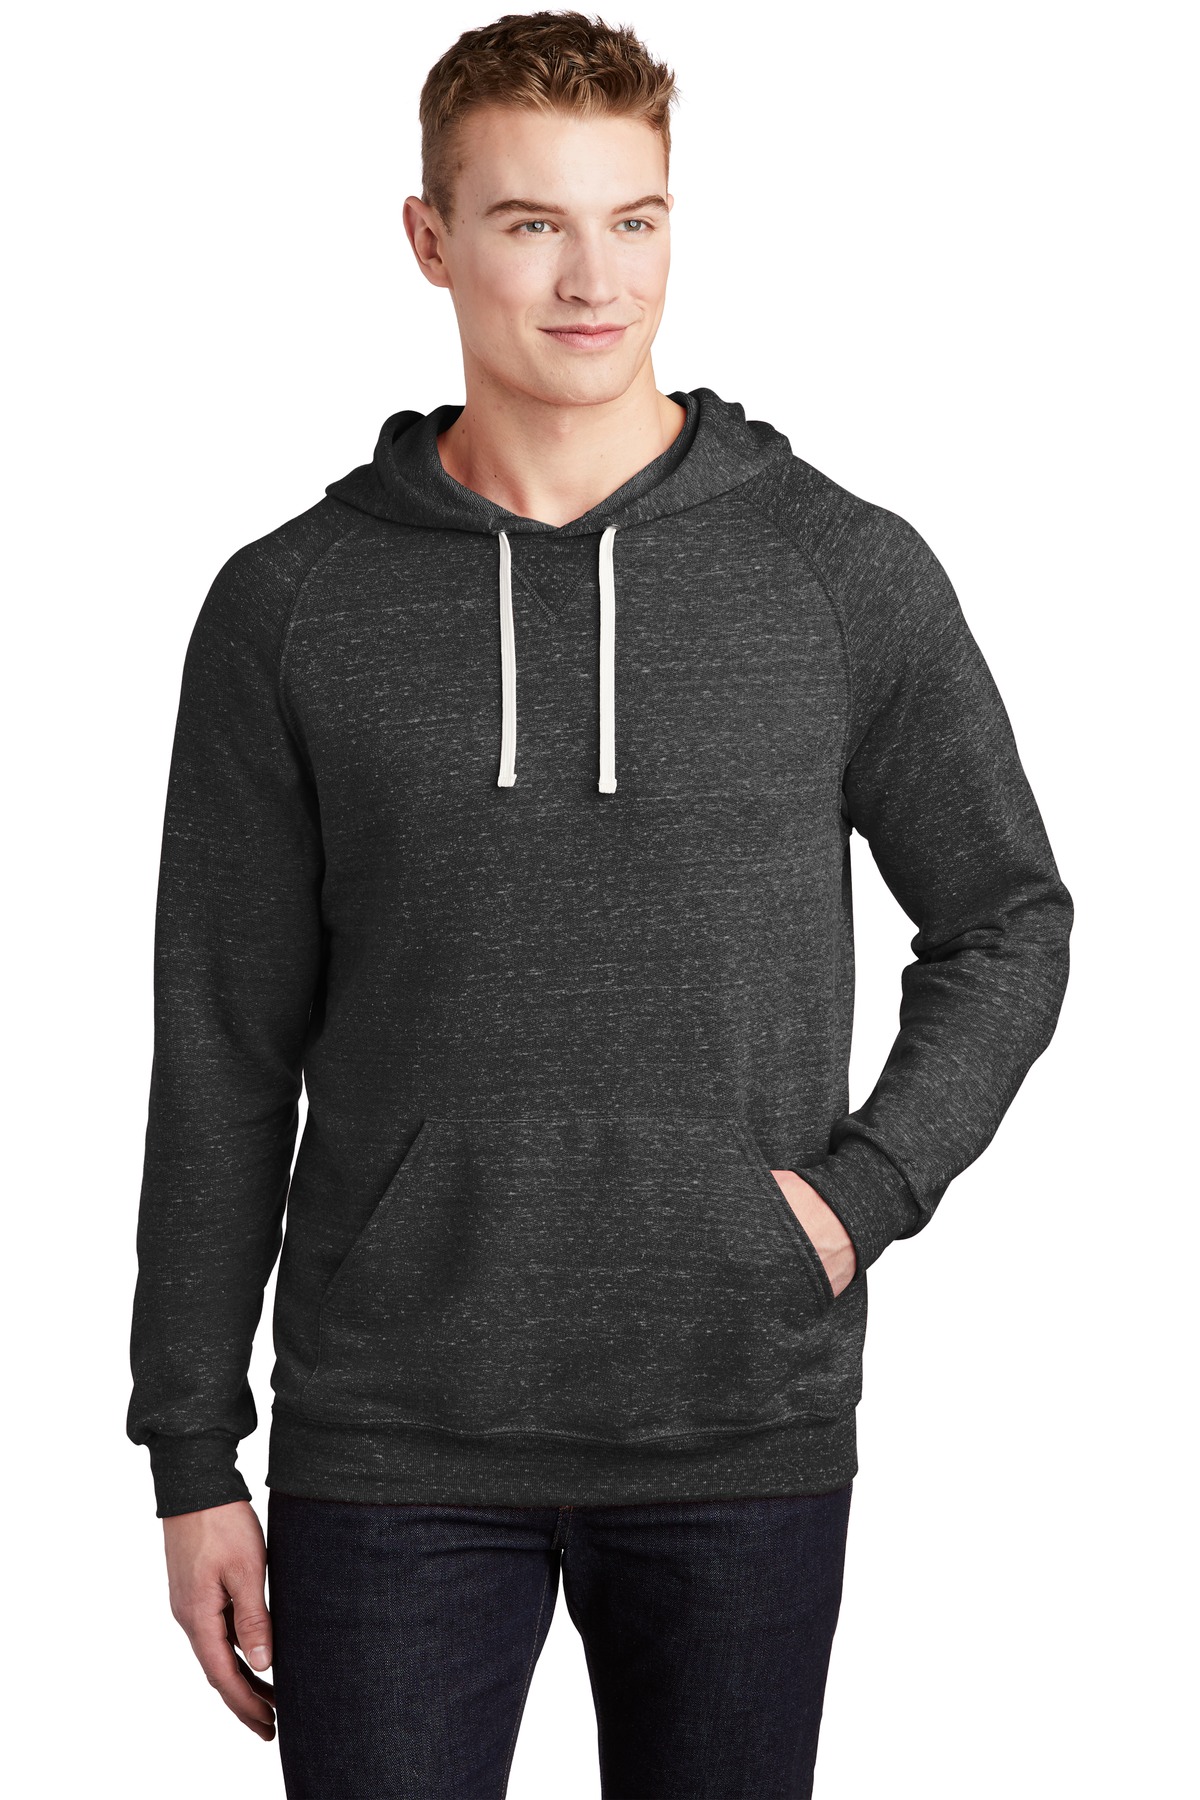 Sweatshirts/Fleece